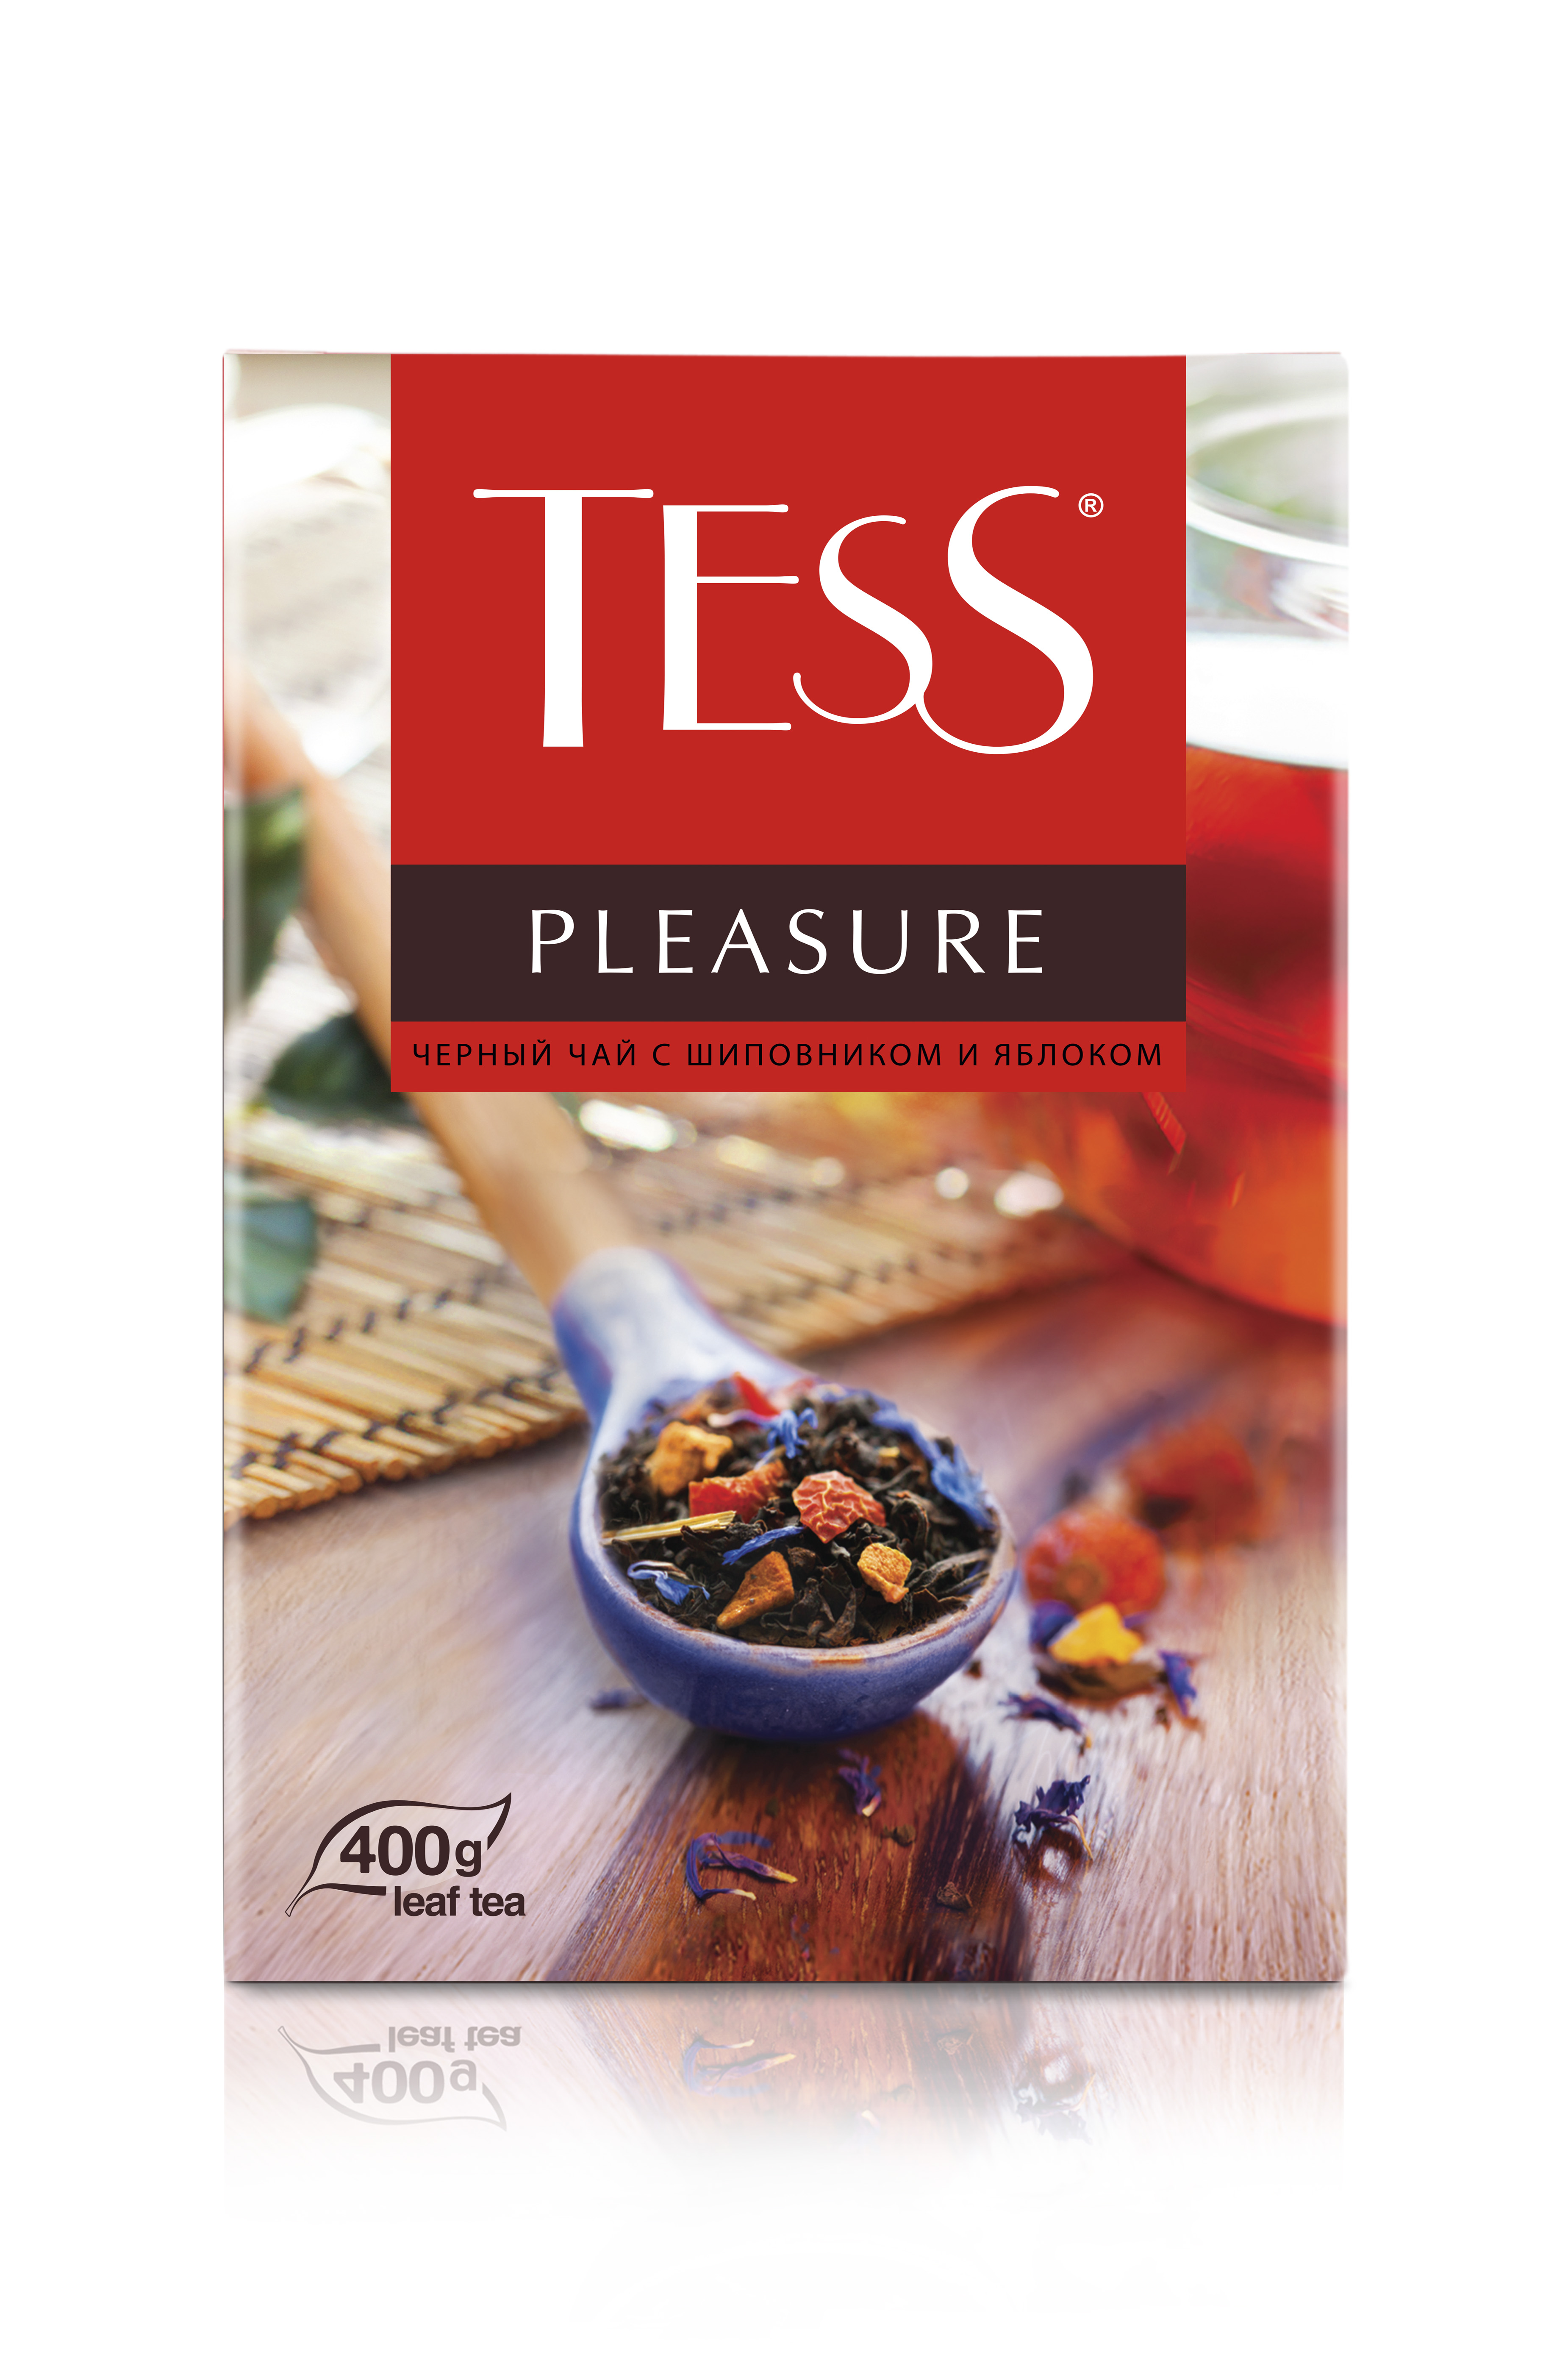 Чай чёрный Tess Pleasure, листовой, с шиповником и яблоком, 400 г